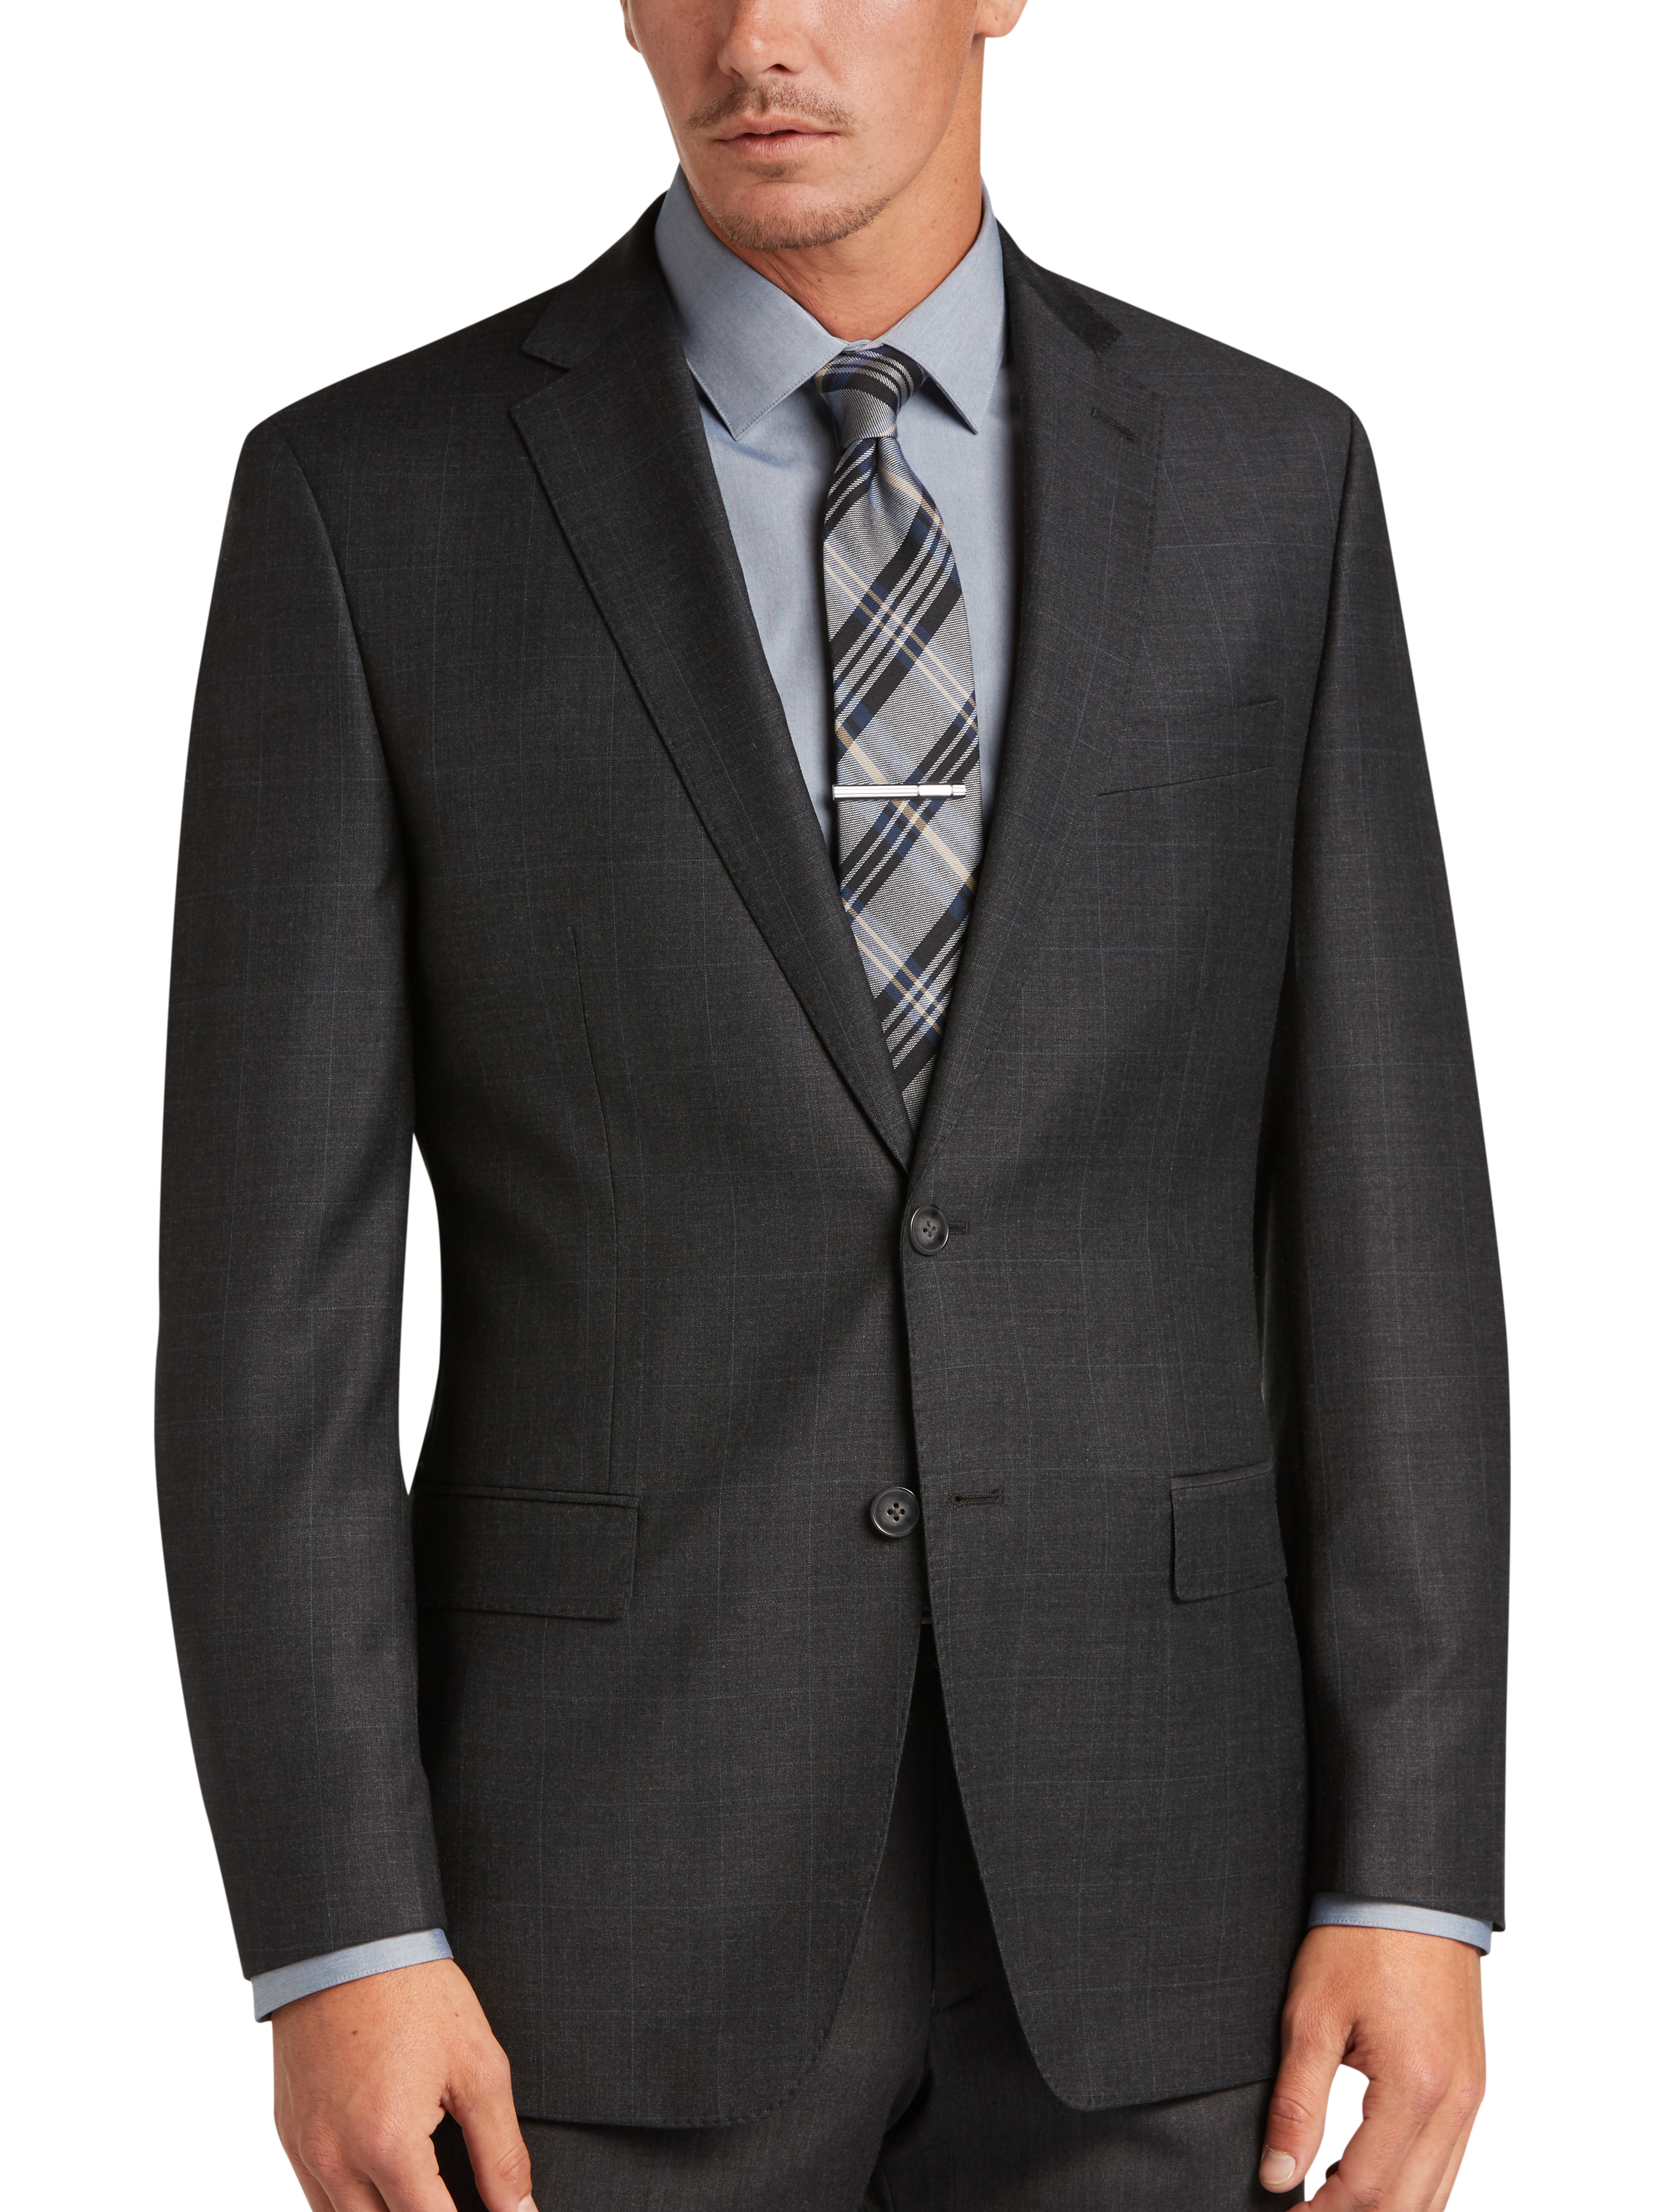 Calvin Klein Charcoal Plaid Modern Fit Suit - Men's Sale | Men's Wearhouse